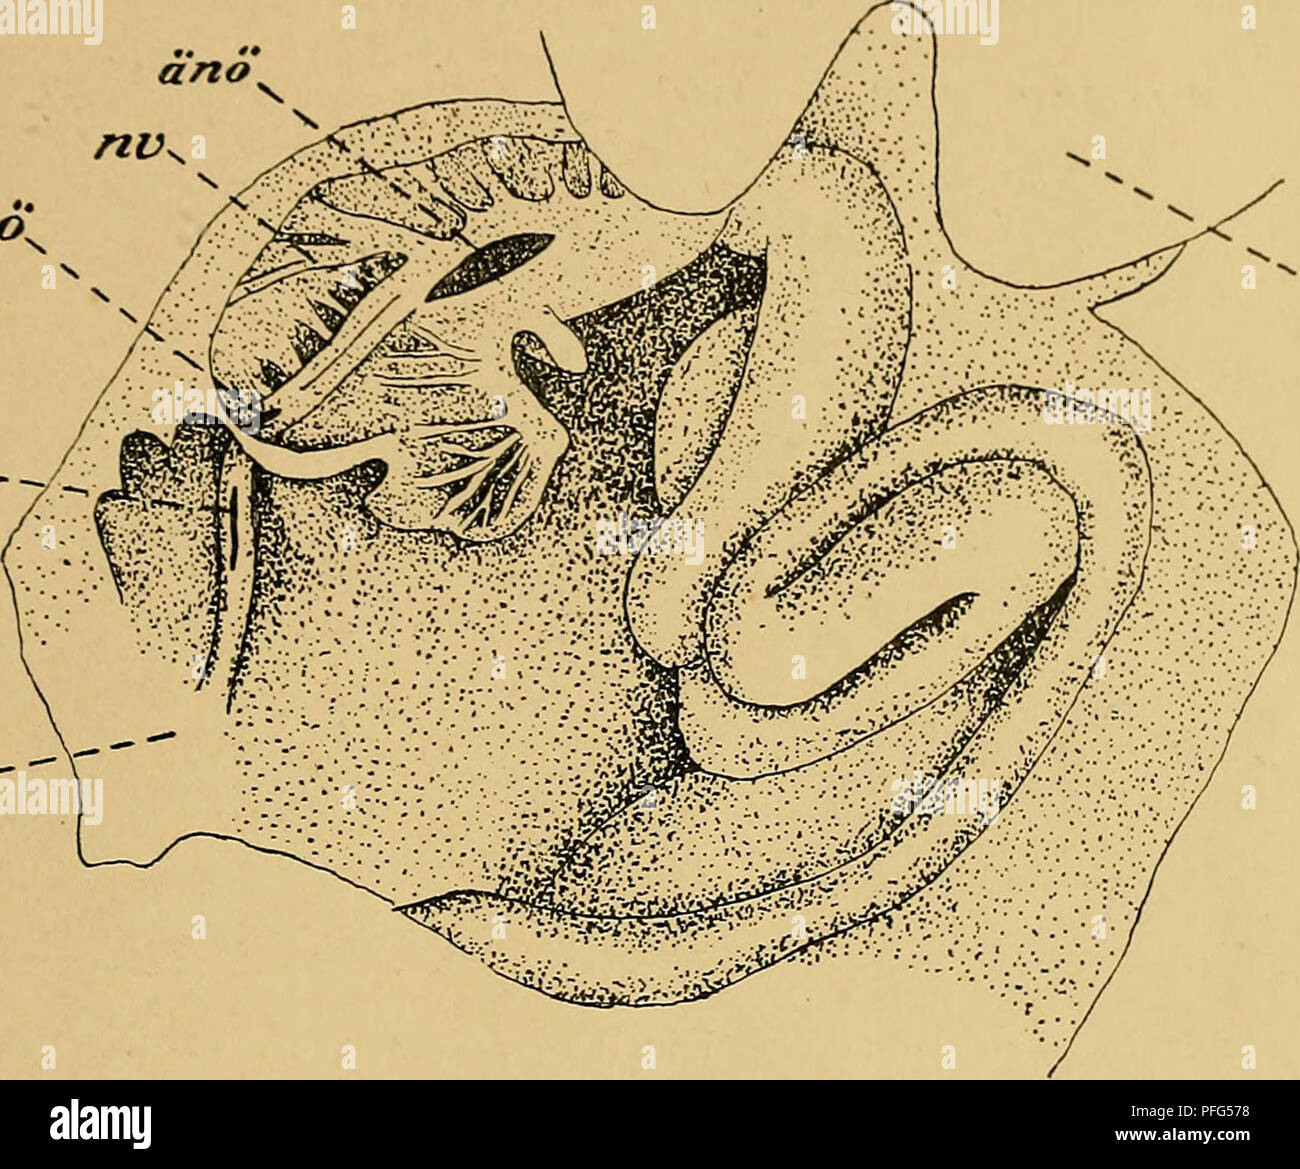 . Das Urogenitalsystem von Ampullaria gigas Spix. Gastropoda; Mollusks. DAS UROGENITALSYSTEM VON VMPULLARIA GIGAS Spix die Höhle der Niere mit dem darunter liegenden spiralig aufgerollten Darm offen ist. Das umgeschlagene I »ach des Hinterlappens ist in Fig. II separal gezeichnet. Durch den ganzen Vorderlappen hindurch auf seinem Boden, zieht ein aus zwei entsprechend kleineren Stücken bestehender Wall, der dem ( )rgan als Achse dient. Zu seinen heiden Seiten, senkrecht zu ihm, sind zahlreiche Lamellen befestigt. Diese Lamellen, welche sich bei näherer Betrachtung radiär von der Anheftungsstel Stock Photo